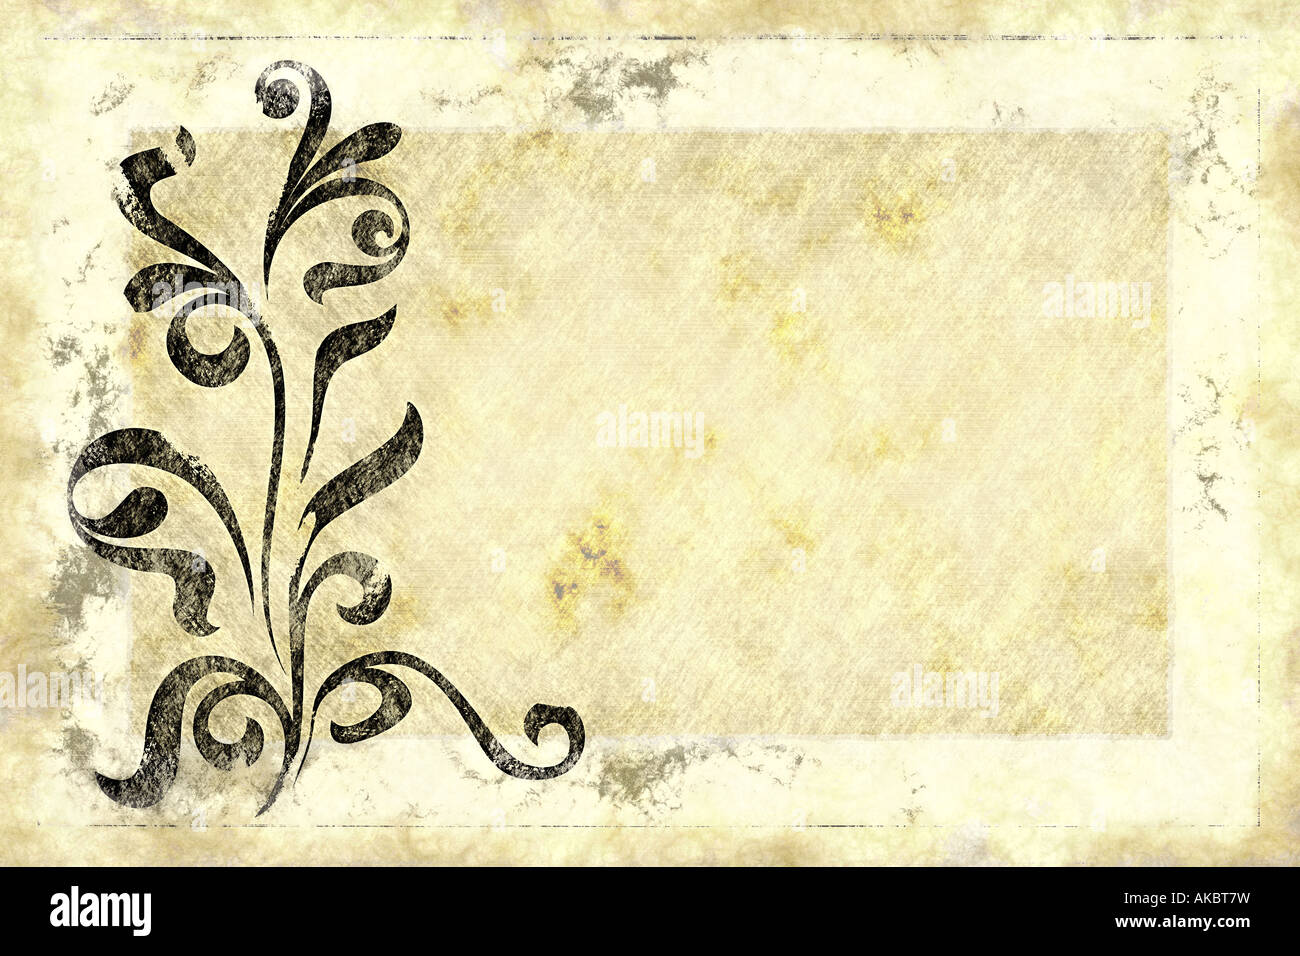 Vieux papier texturé vieux parchemin grunge grungy toile textile vitrail tache swirls swirly leaf design floral orné de feuilles de lignes Banque D'Images